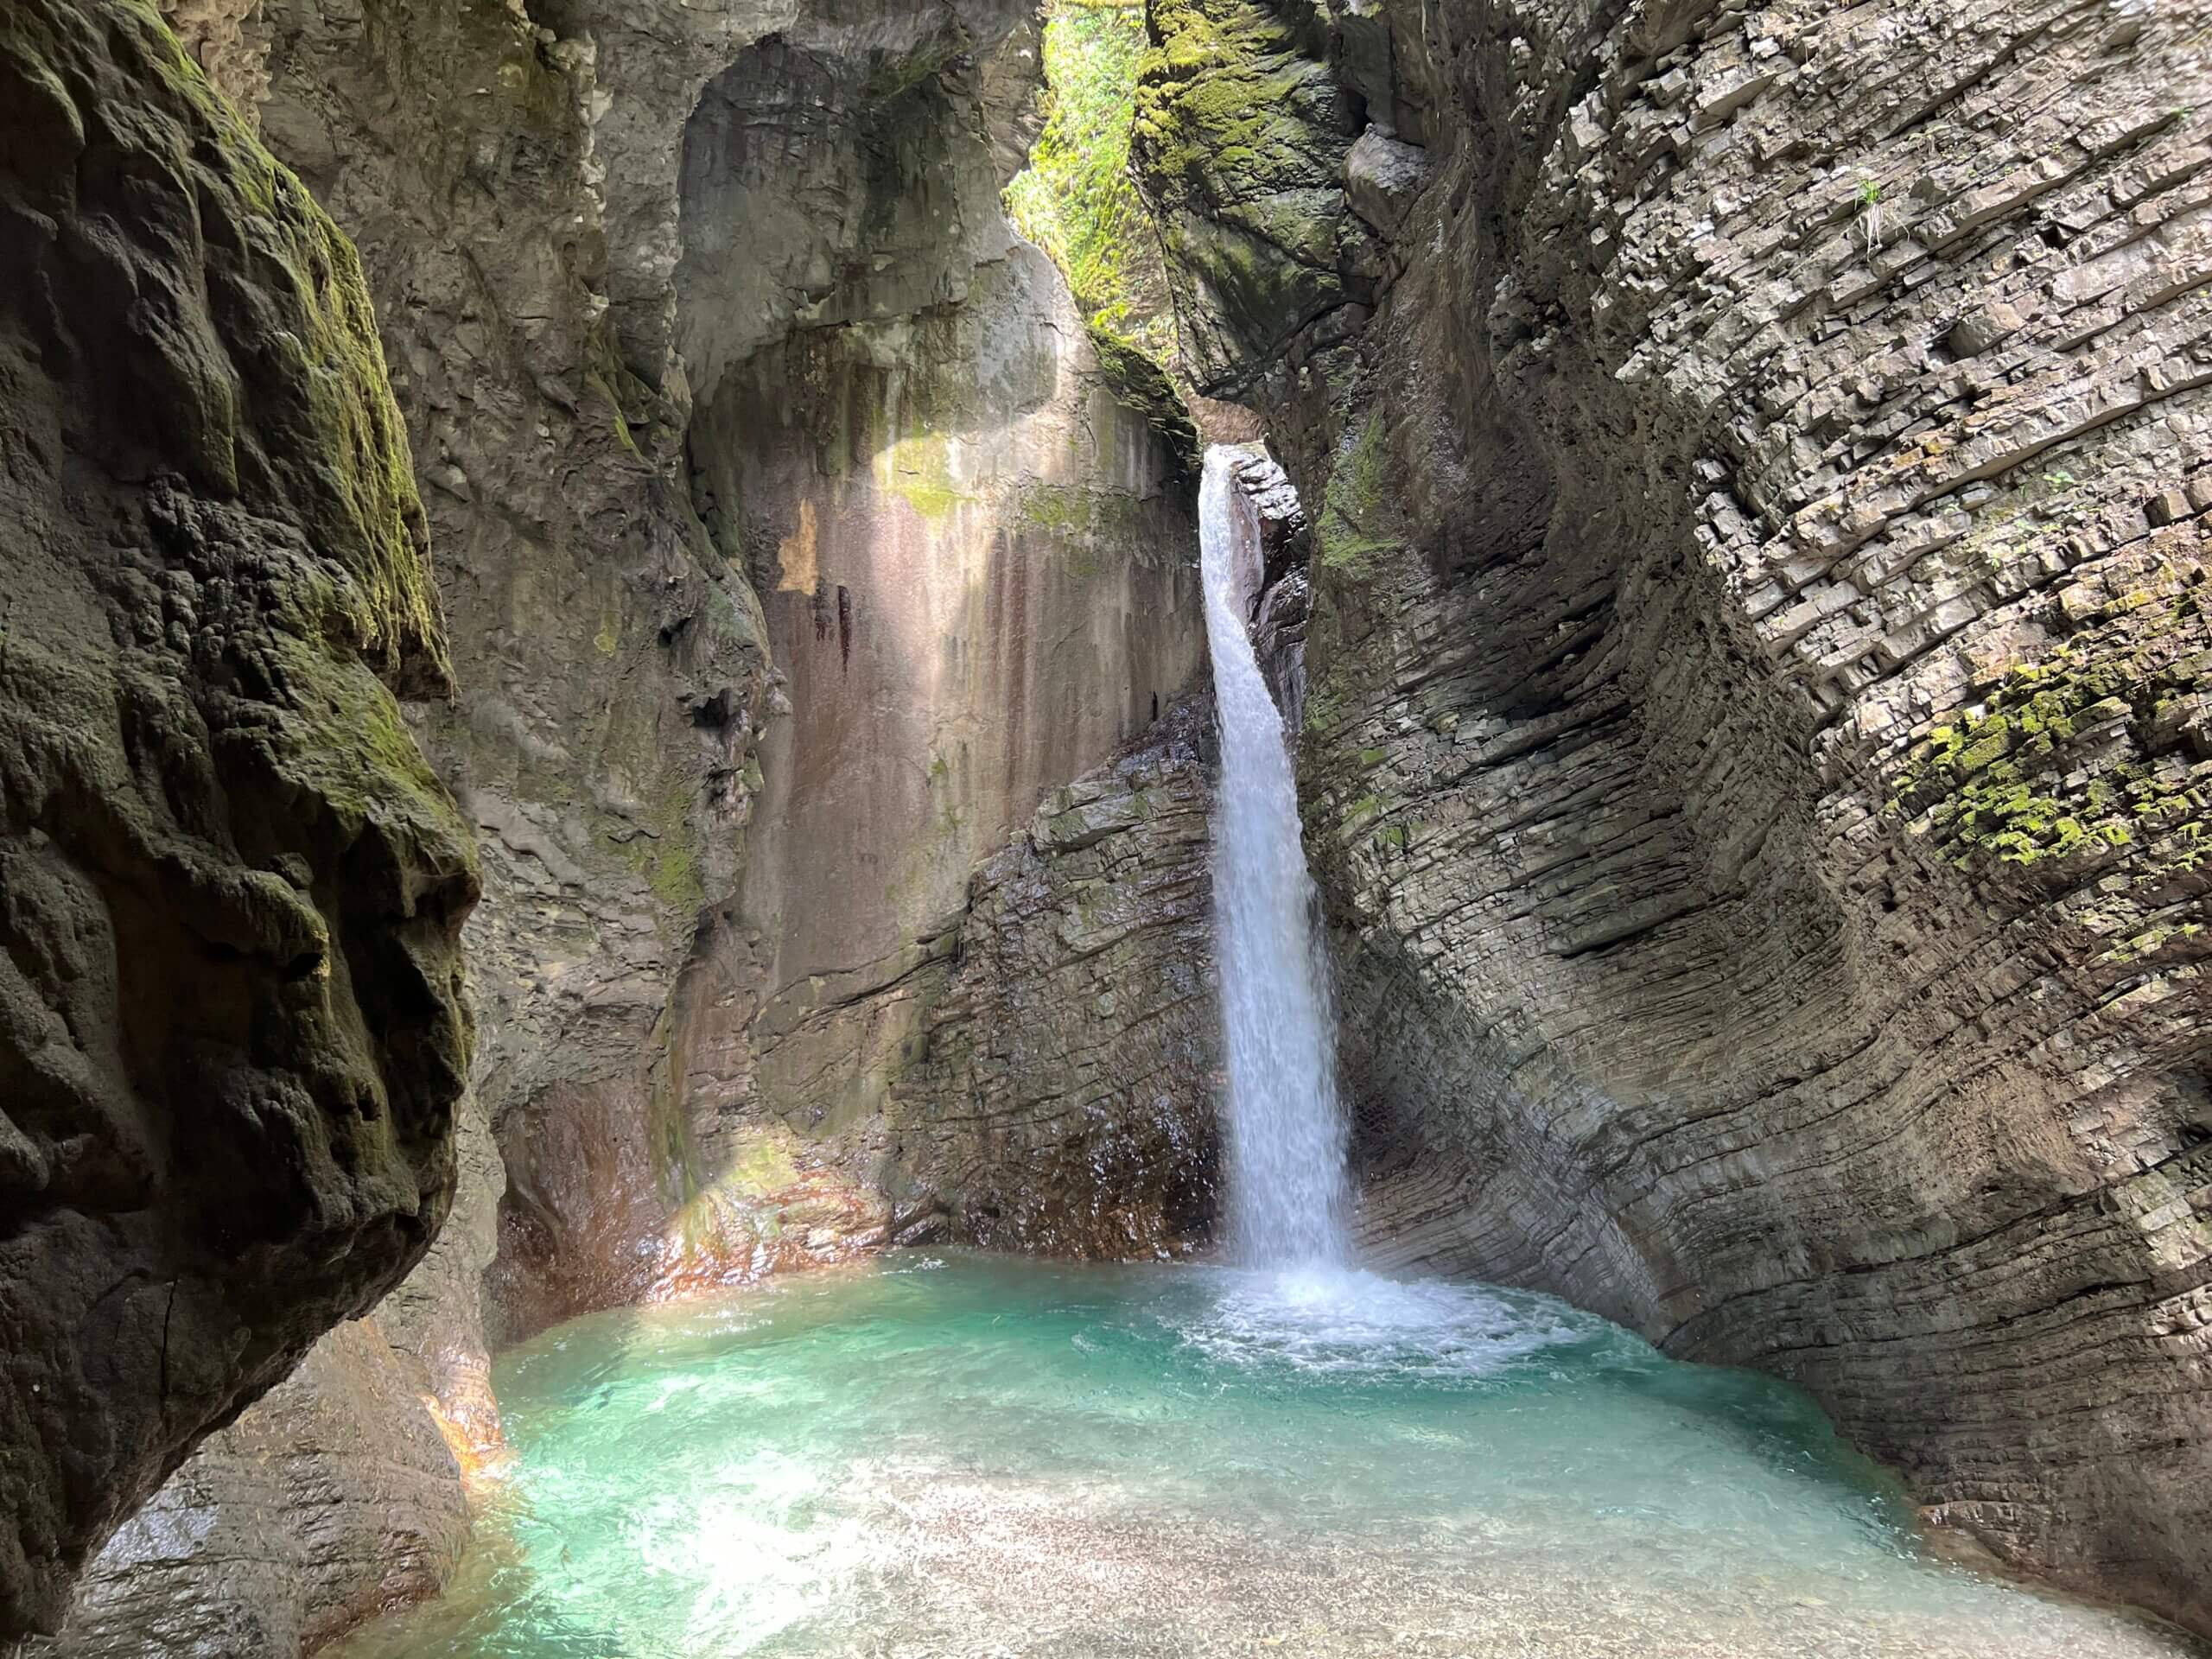 De watervallen in Slovenië zijn absoluut een bezoek waard, zeker met kinderen.